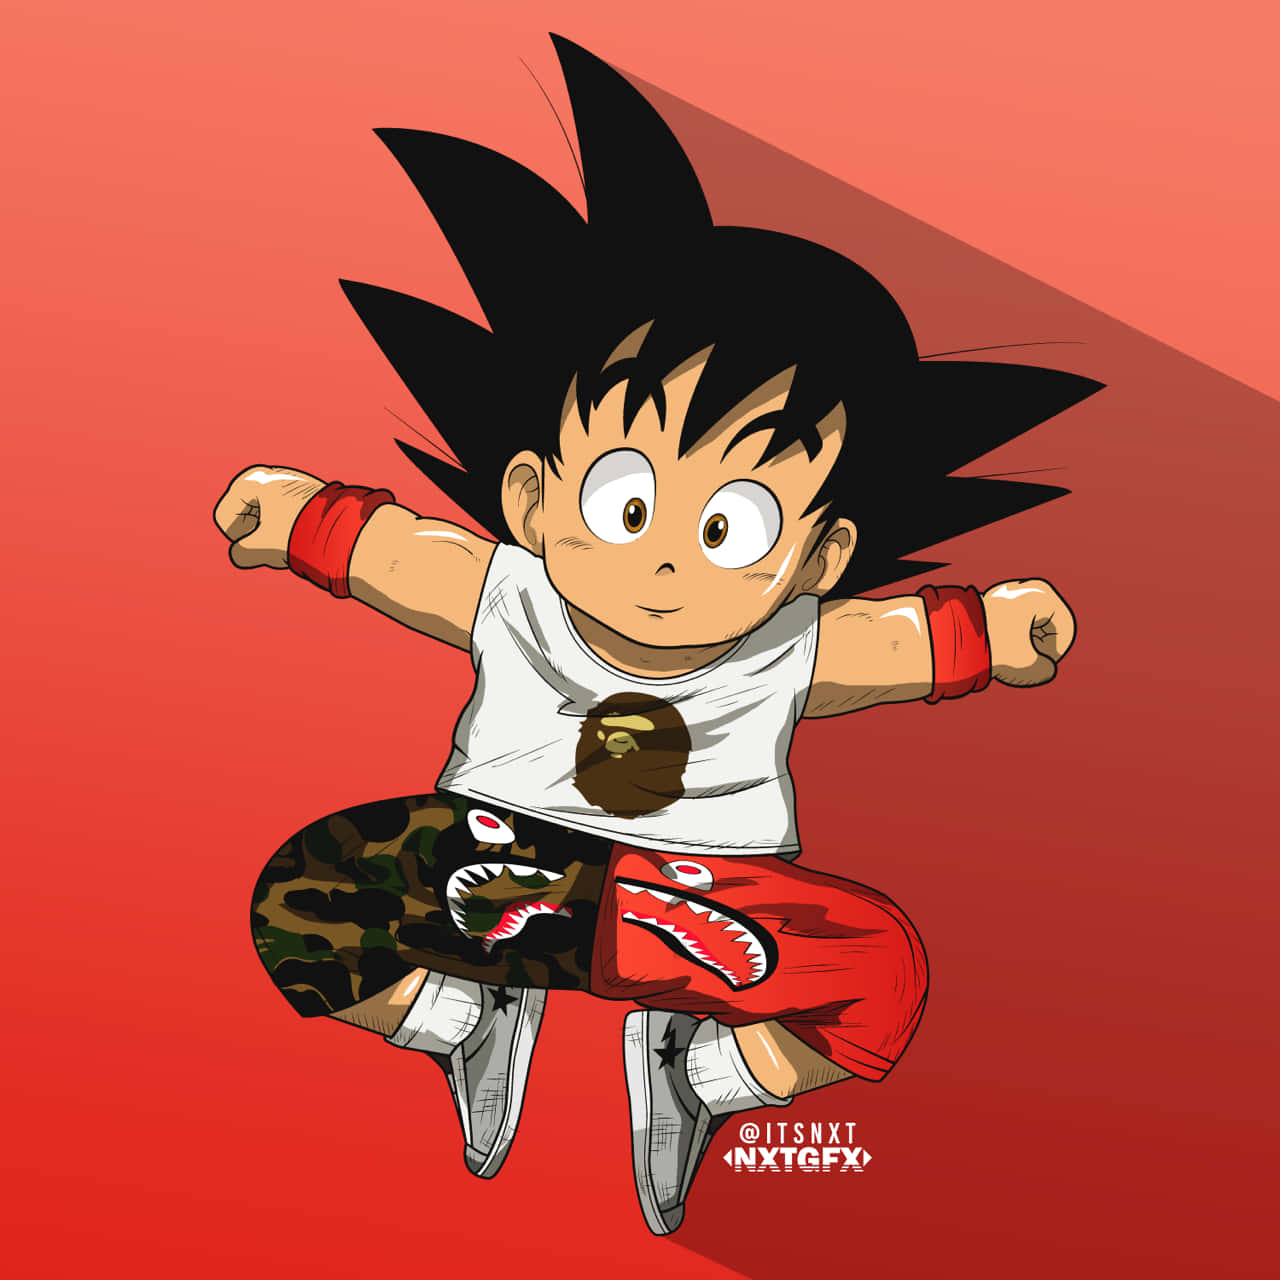 Immaginedel Profilo Xbox Di Kid Goku Figo